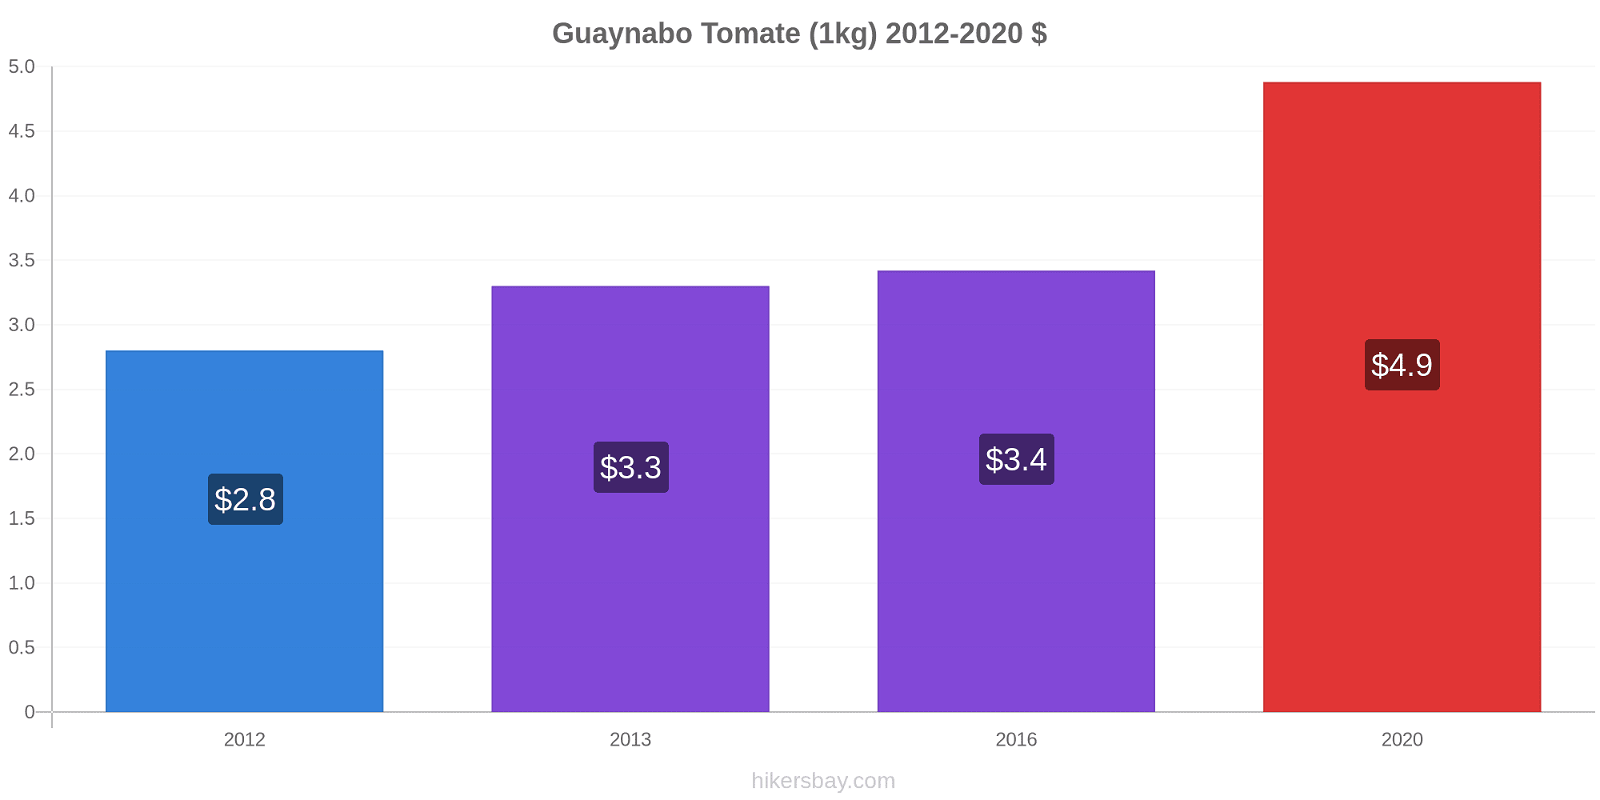 Guaynabo variação de preço Tomate (1kg) hikersbay.com